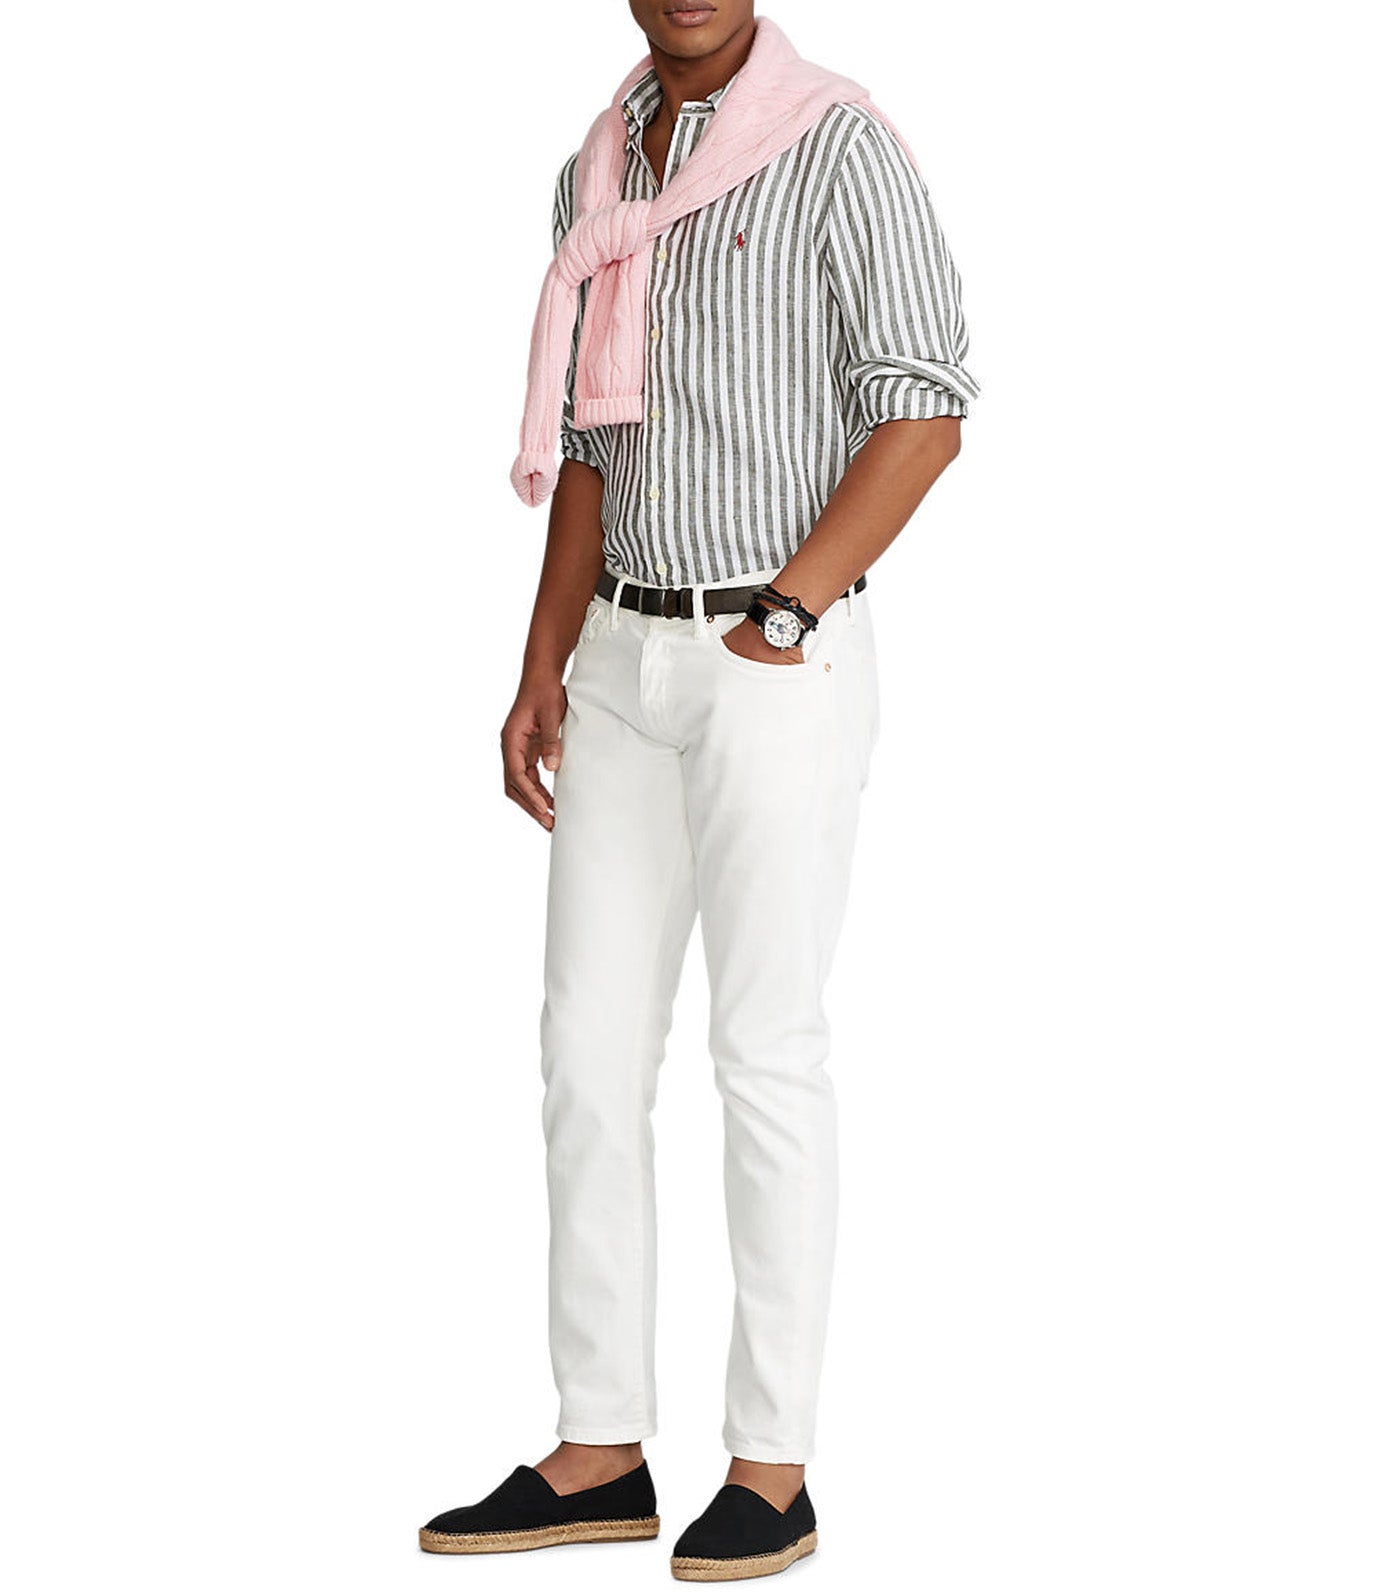 Men's Custom Fit Striped Linen Shirt Olive/White